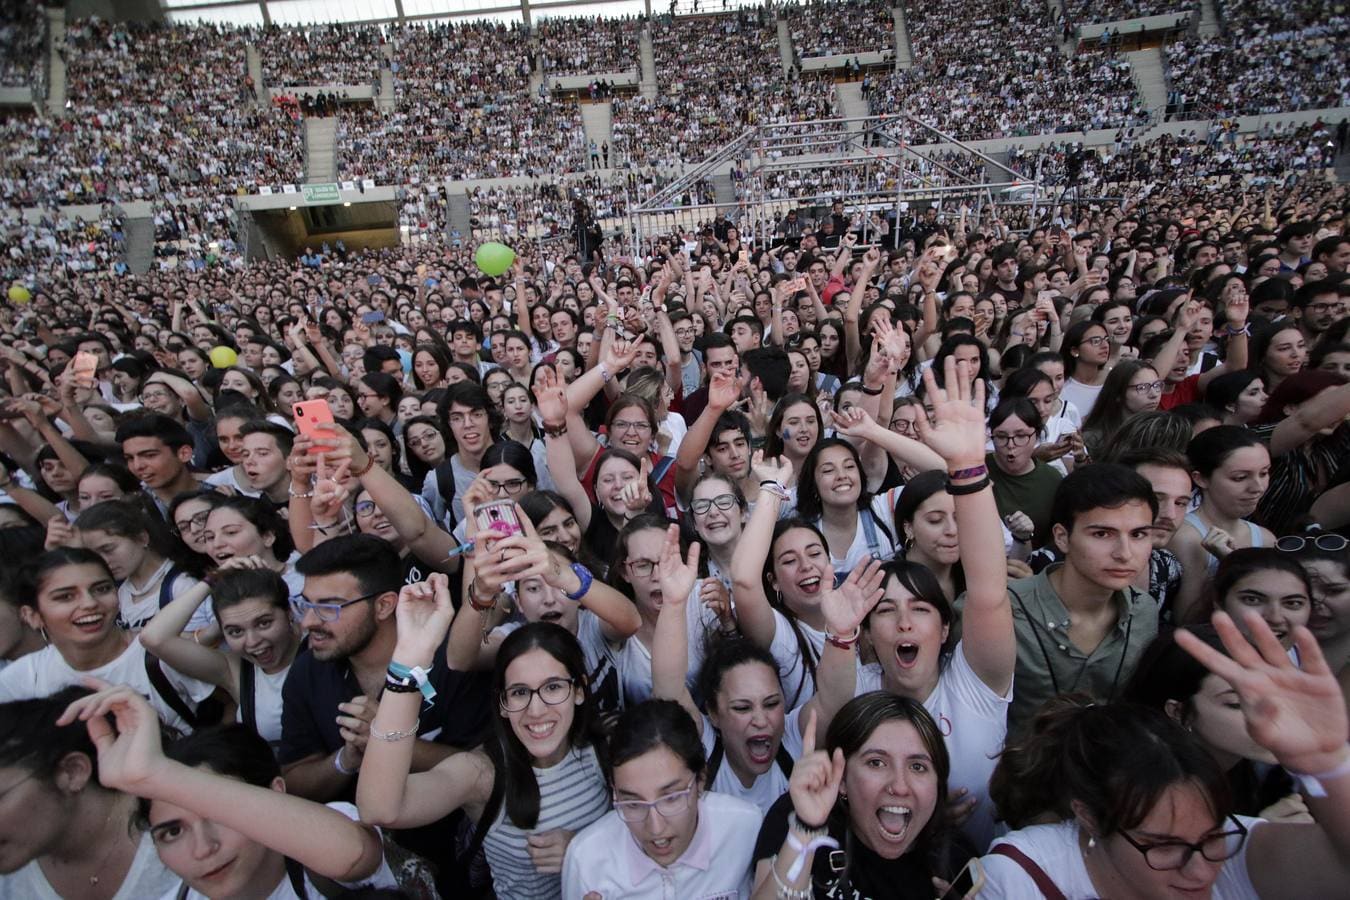 Las mejores imágenes del concierto de Operación Triunfo en Sevilla